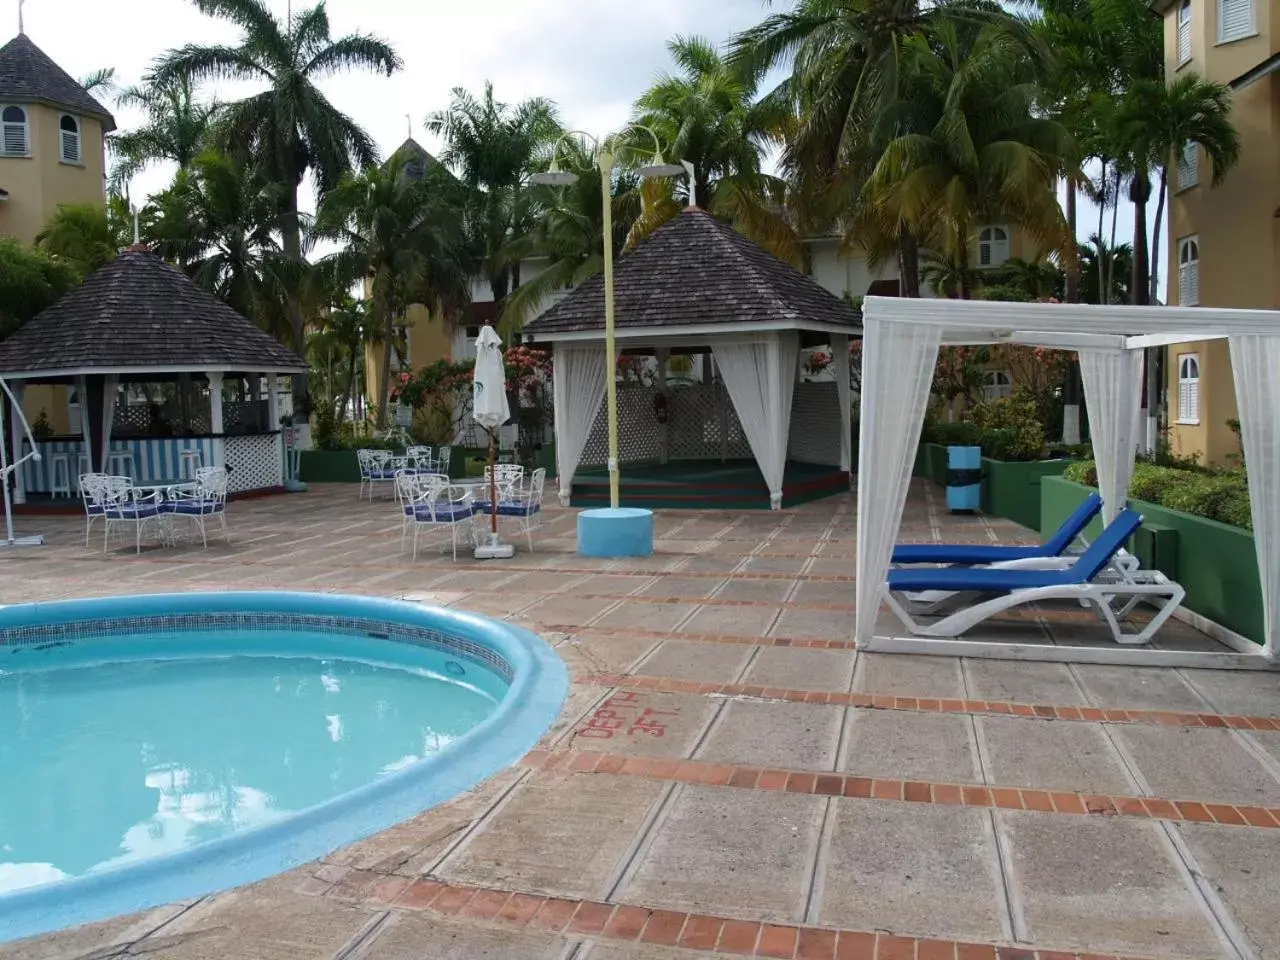 Swimming Pool in Sandcastles Resort, Ocho Rios